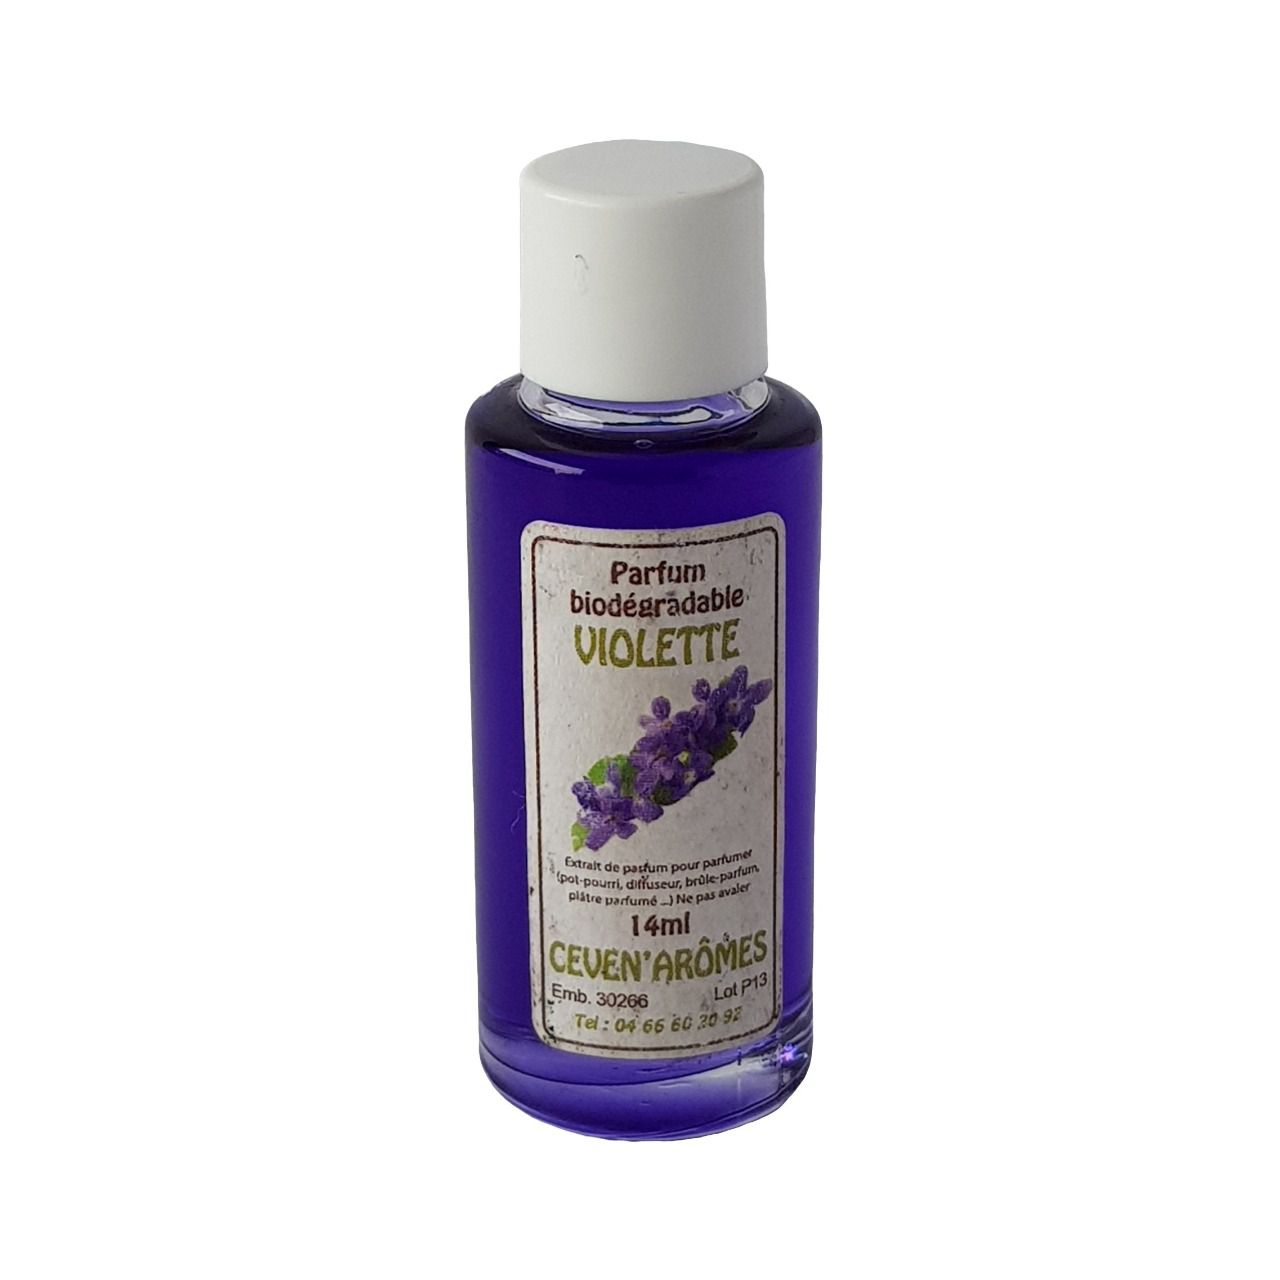 Extrait de parfum violette 14ml | CEVEN AROMES